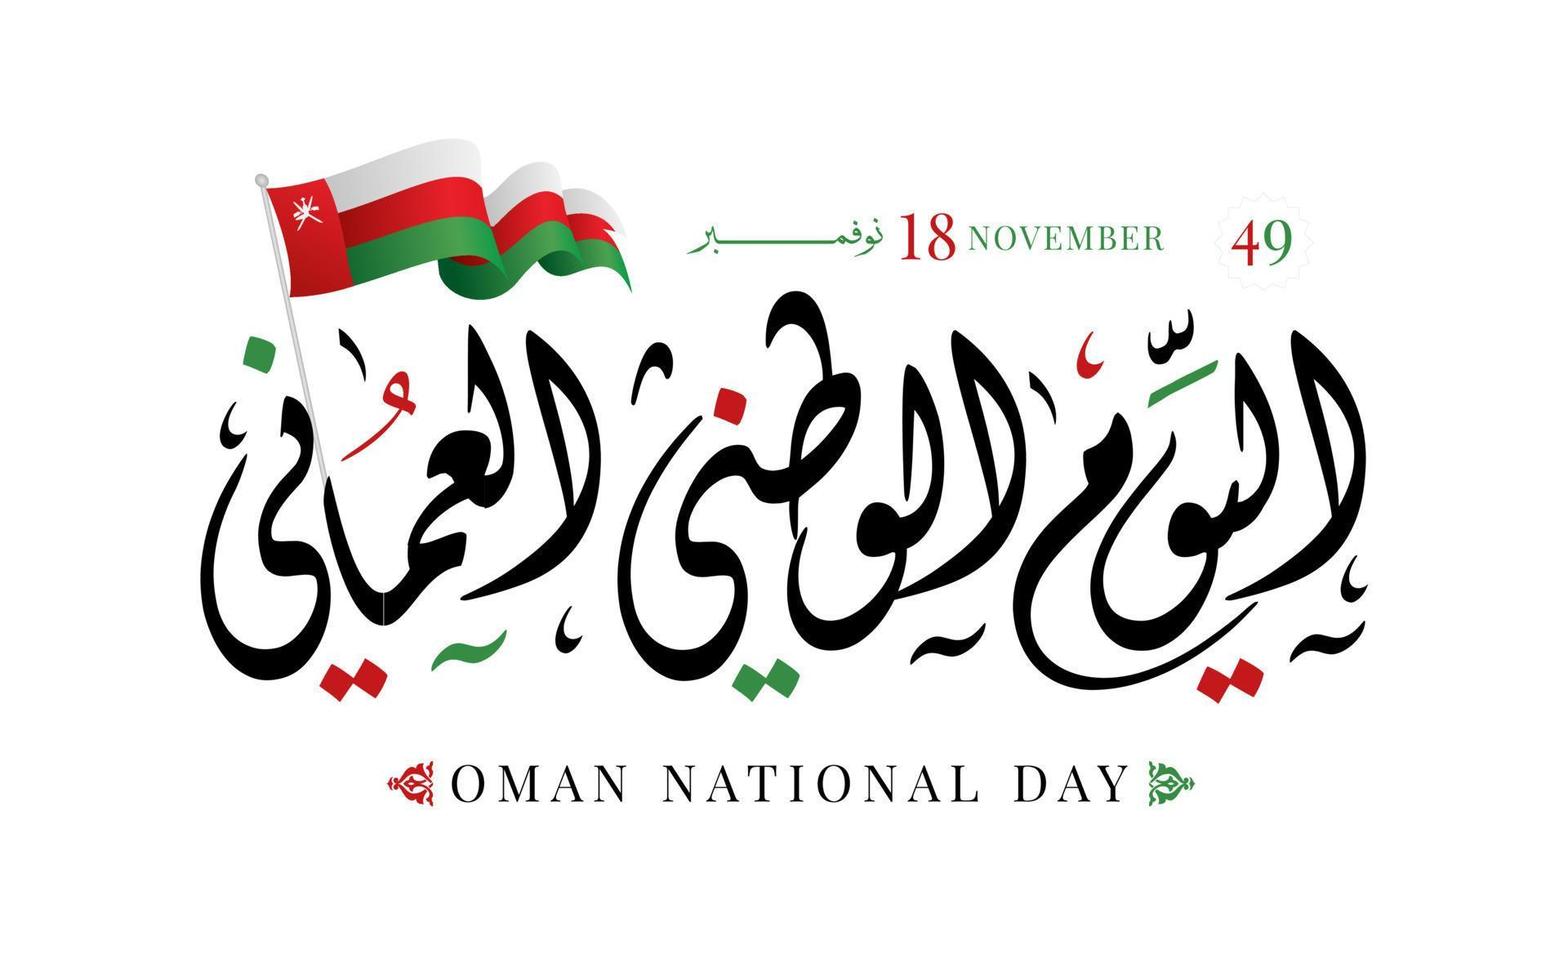 sultanato de omã dia nacional 18 de novembro ilustração vetorial vetor